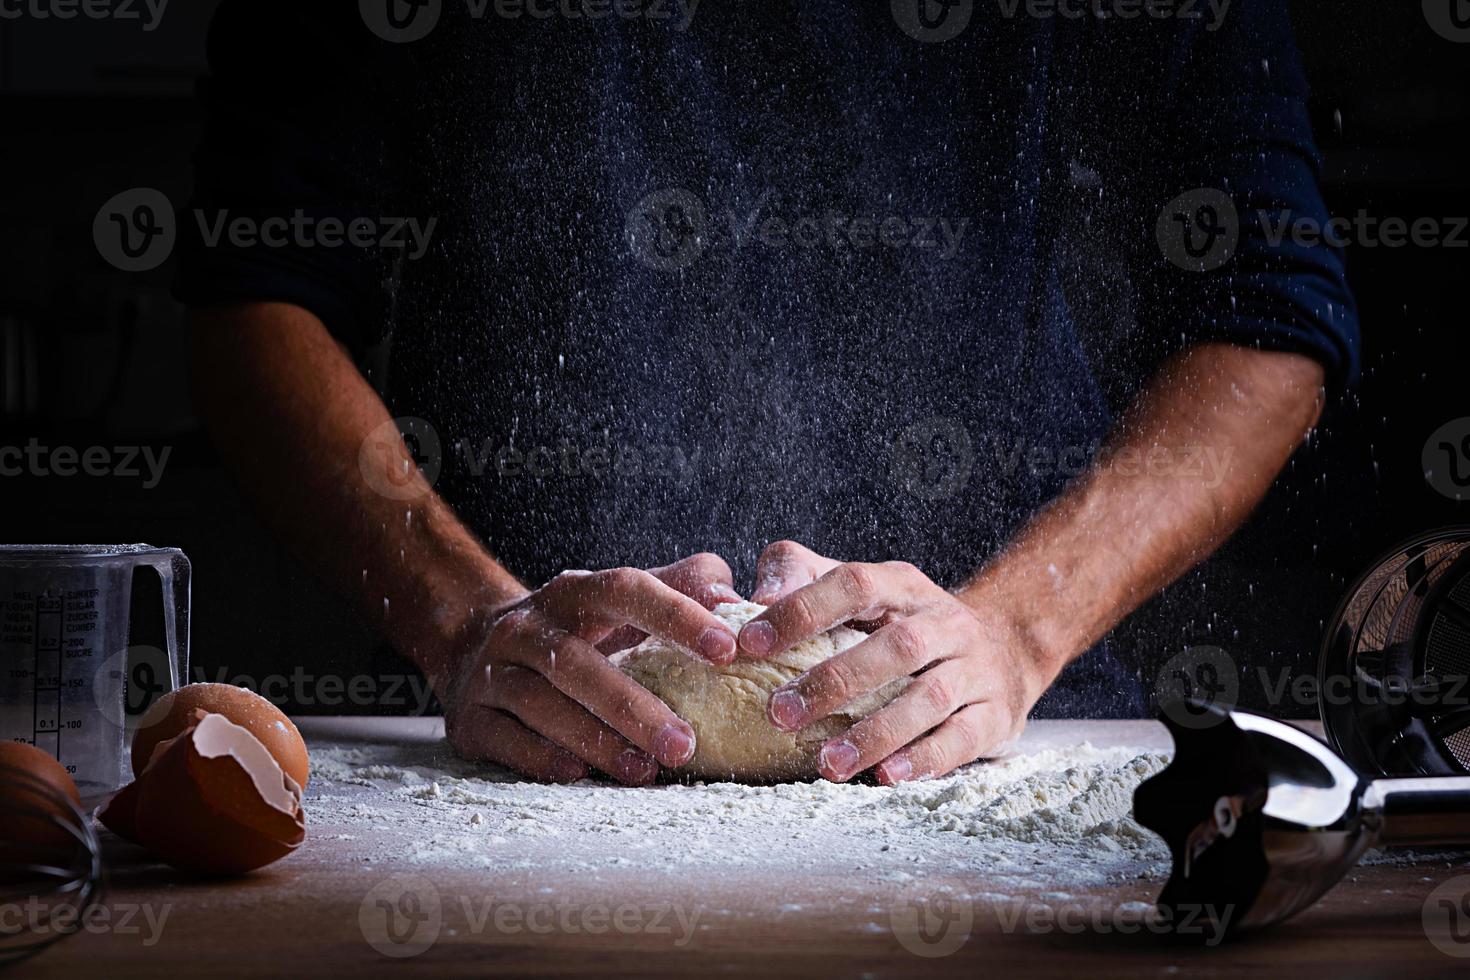 mannelijke handen maken deeg voor pizza, knoedels of brood. bakconcept. foto